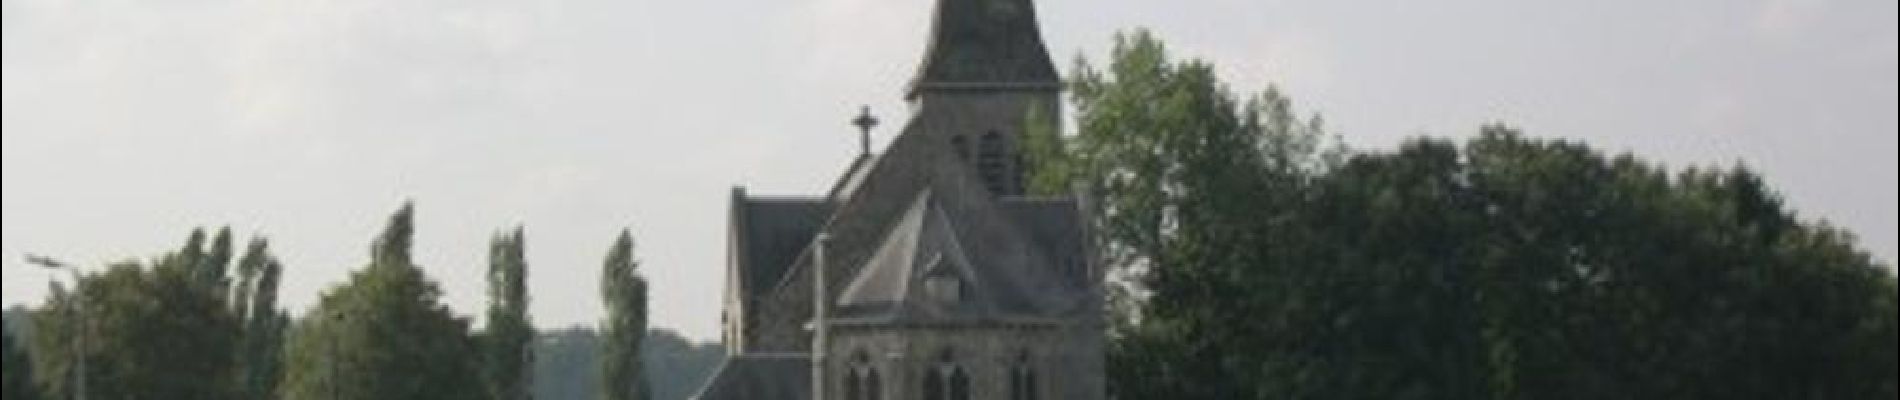 Point d'intérêt Andenne - Eglise Saint-Martin de Maizeret - Photo